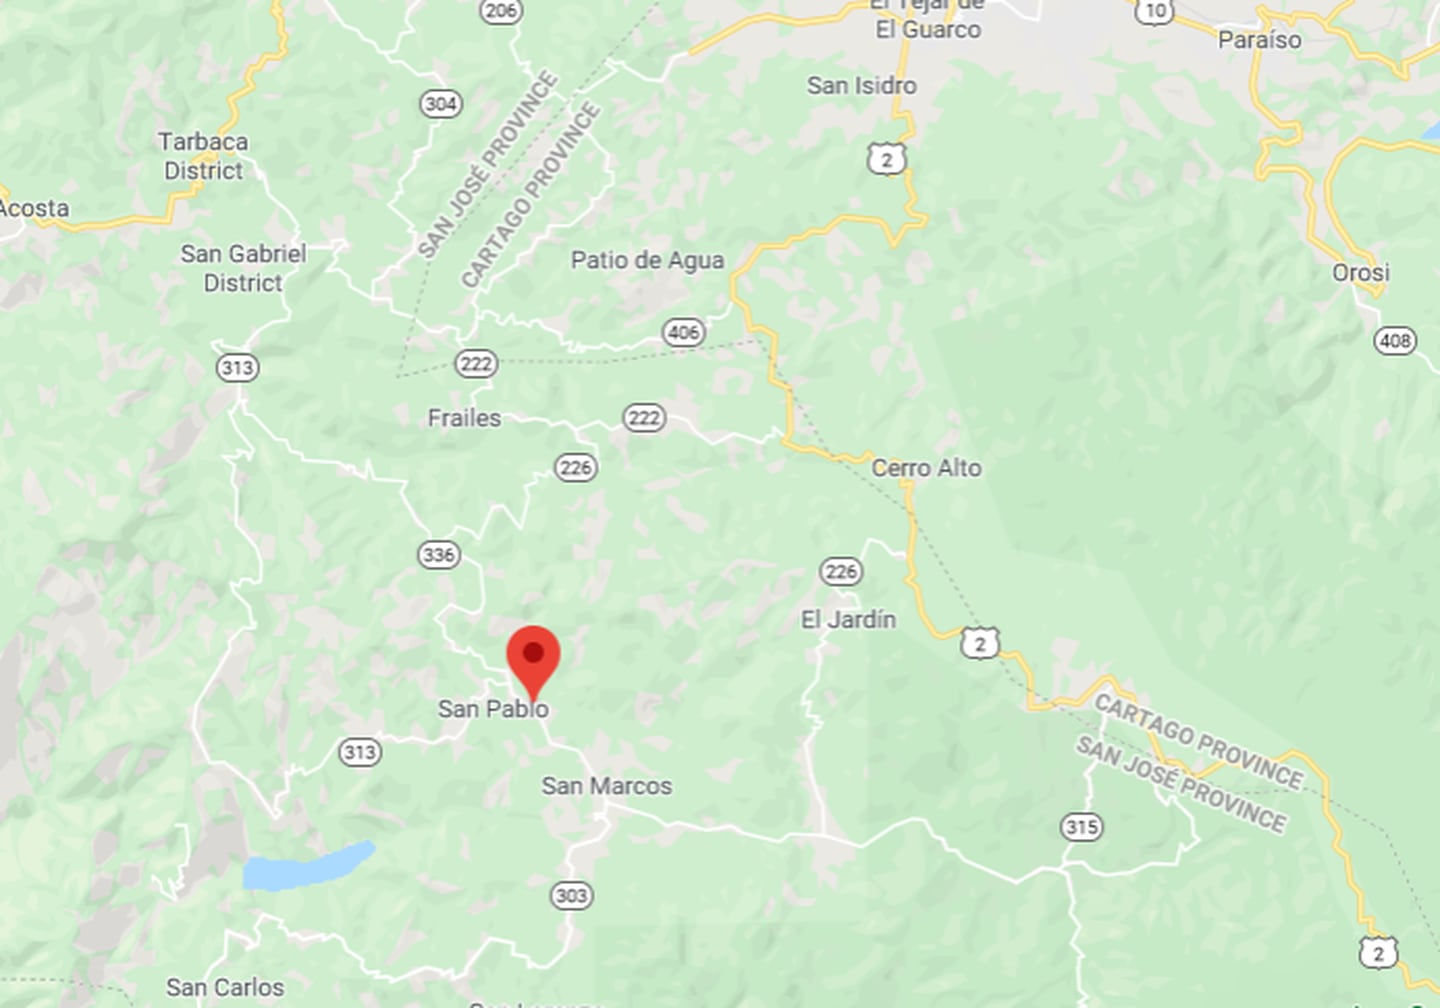 El hallazgo de dos mujeres sin vida en San Pablo de León Cortés esta tarde genera la movilización policial para ver si tiene relación con un incendio en la zona. Imagen: Google maps.